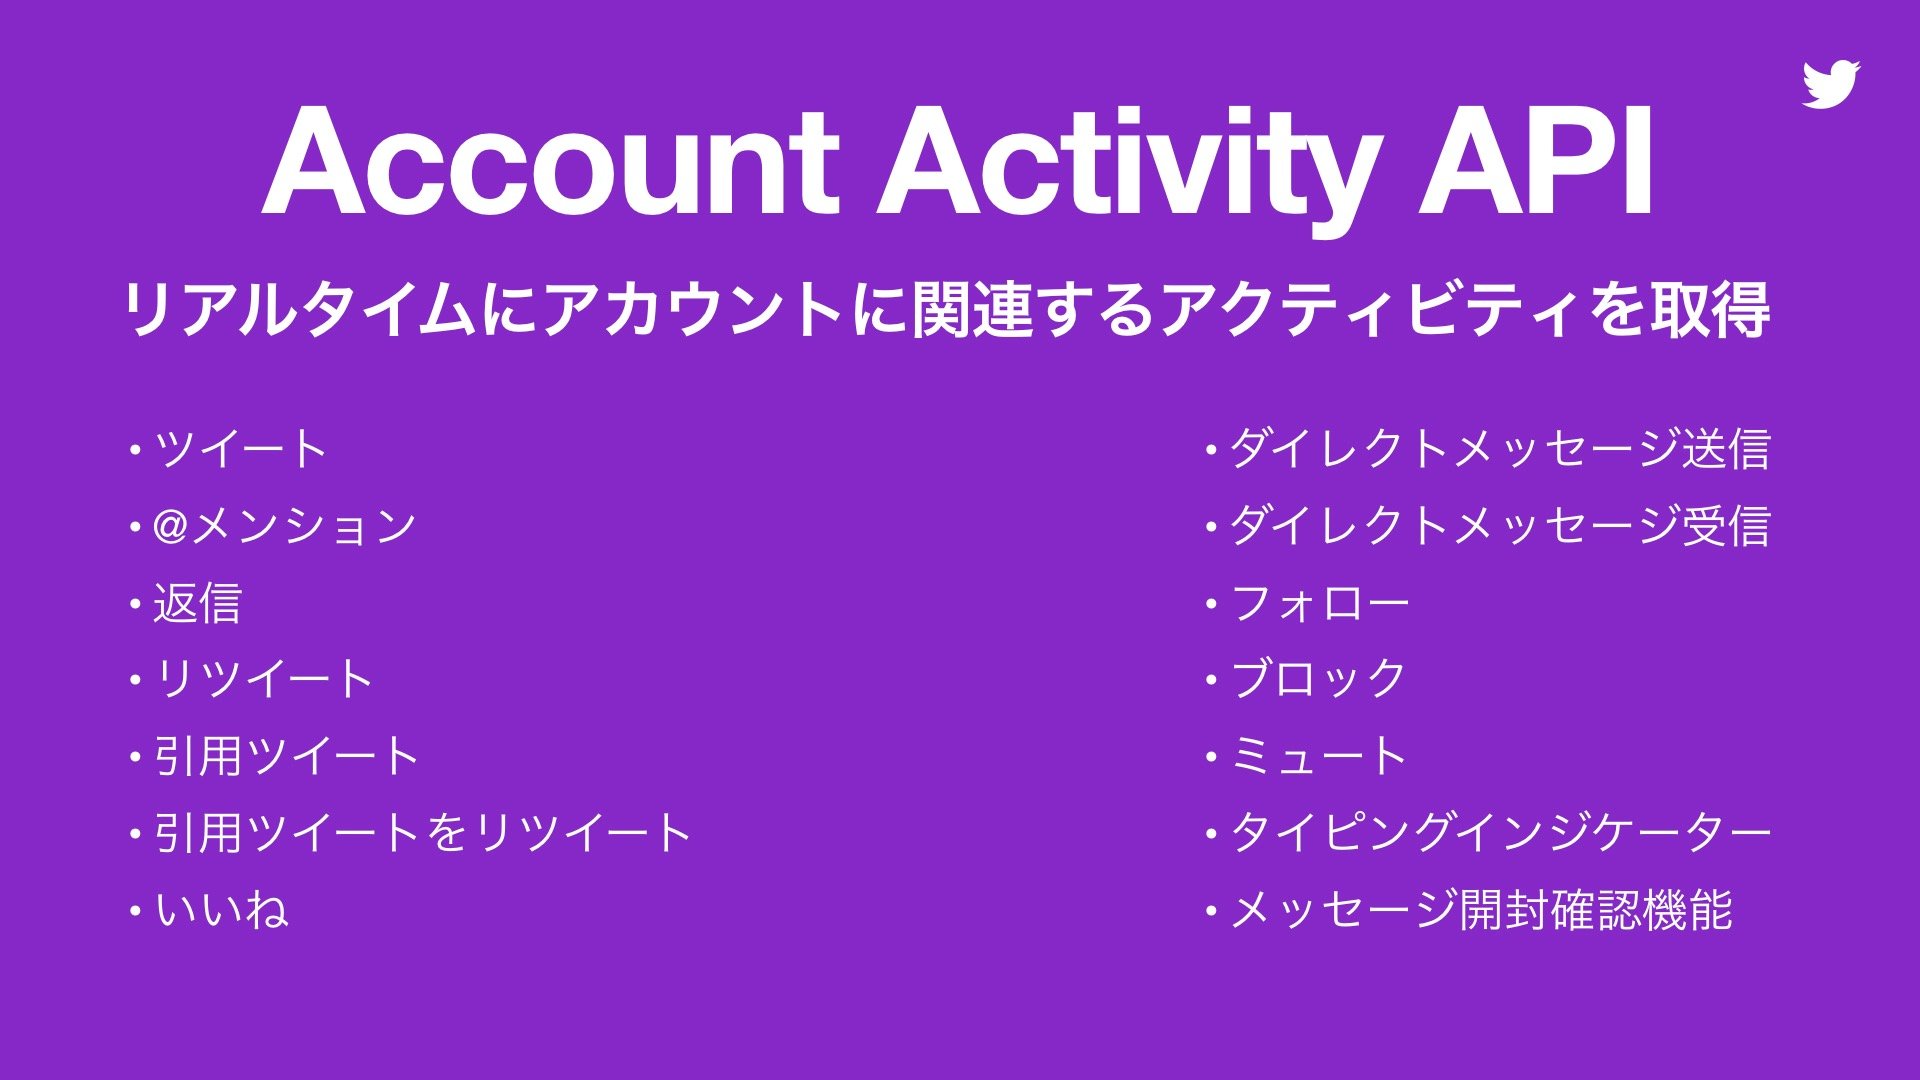 新API「Account Activity API」の機能概要